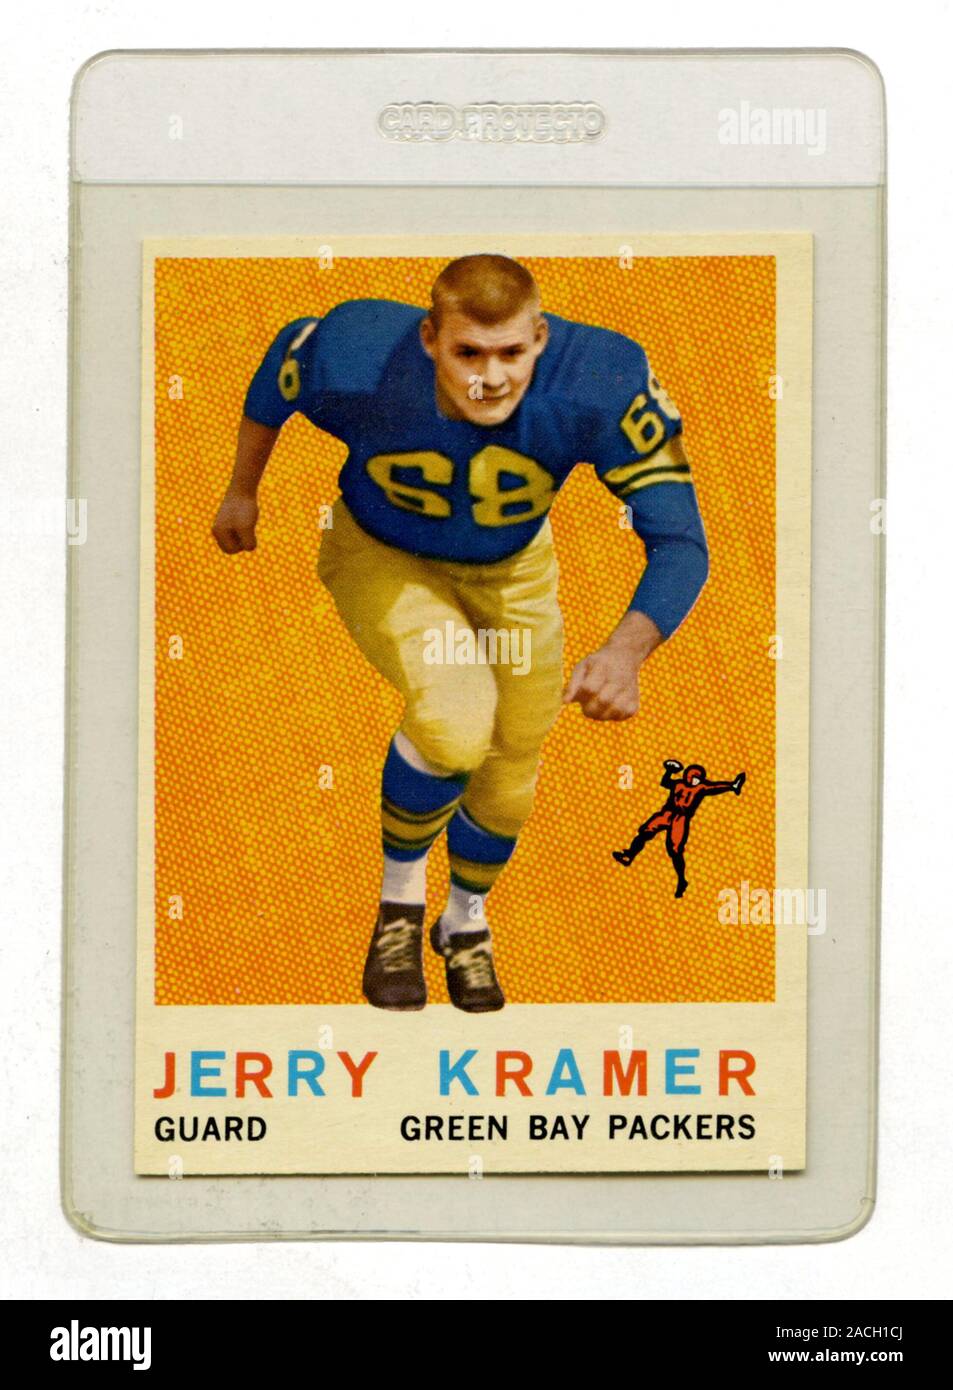 Classica carta da calcio raffigurante Jerry Kramer una guardia con i Green Bay Packers emessi da Topps nel 1959 Foto Stock